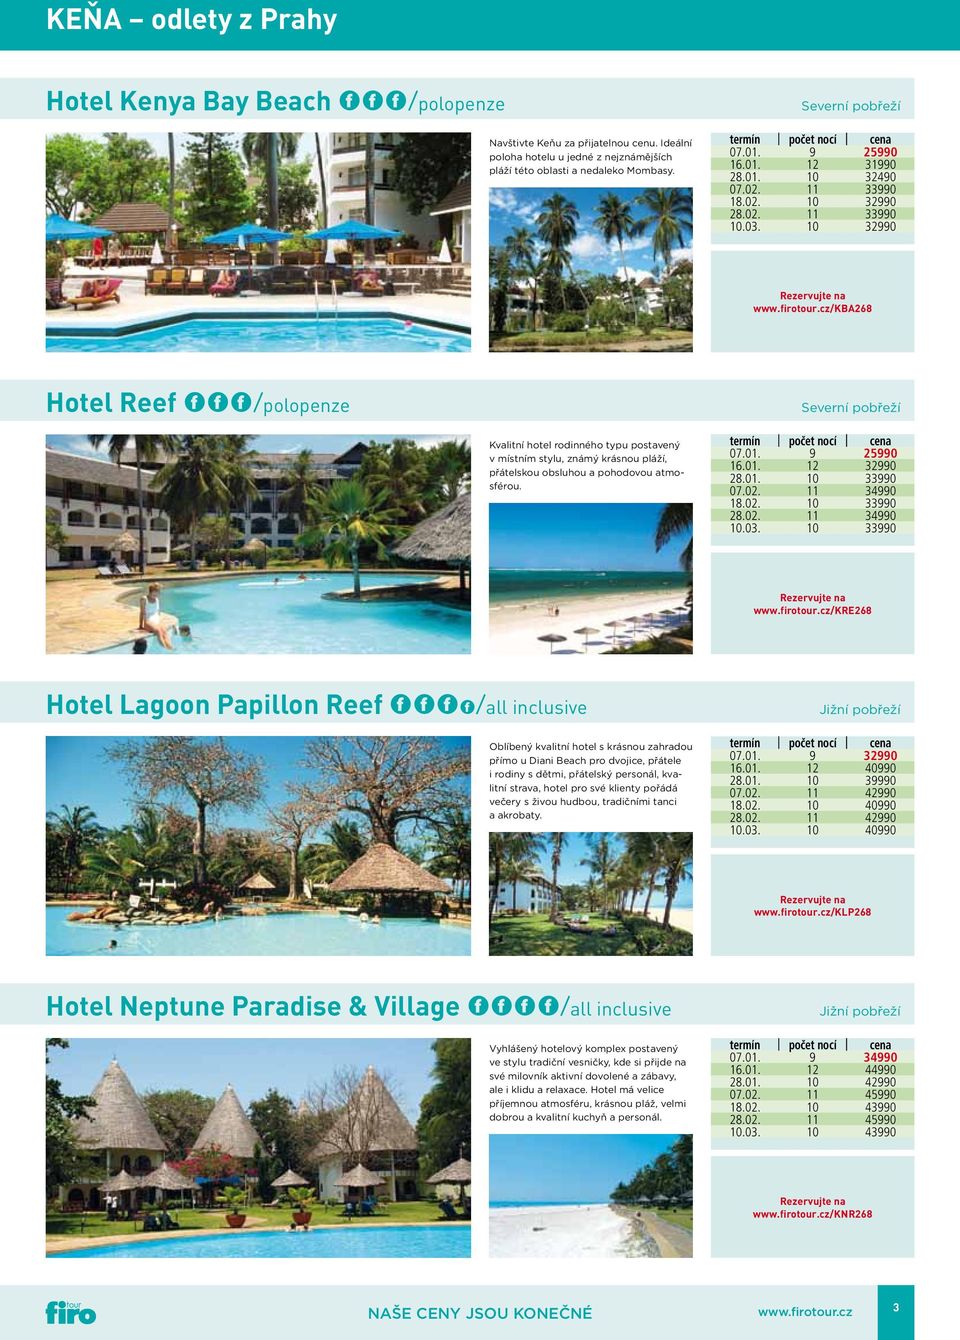 cz/kba268 Hotel Reef *F*/polopenze Severní pobřeží Kvalitní hotel rodinného typu postavený v místním stylu, známý krásnou pláží, přátelskou obsluhou a pohodovou atmosférou. 07.01. 9 25990 16.01. 12 32990 28.